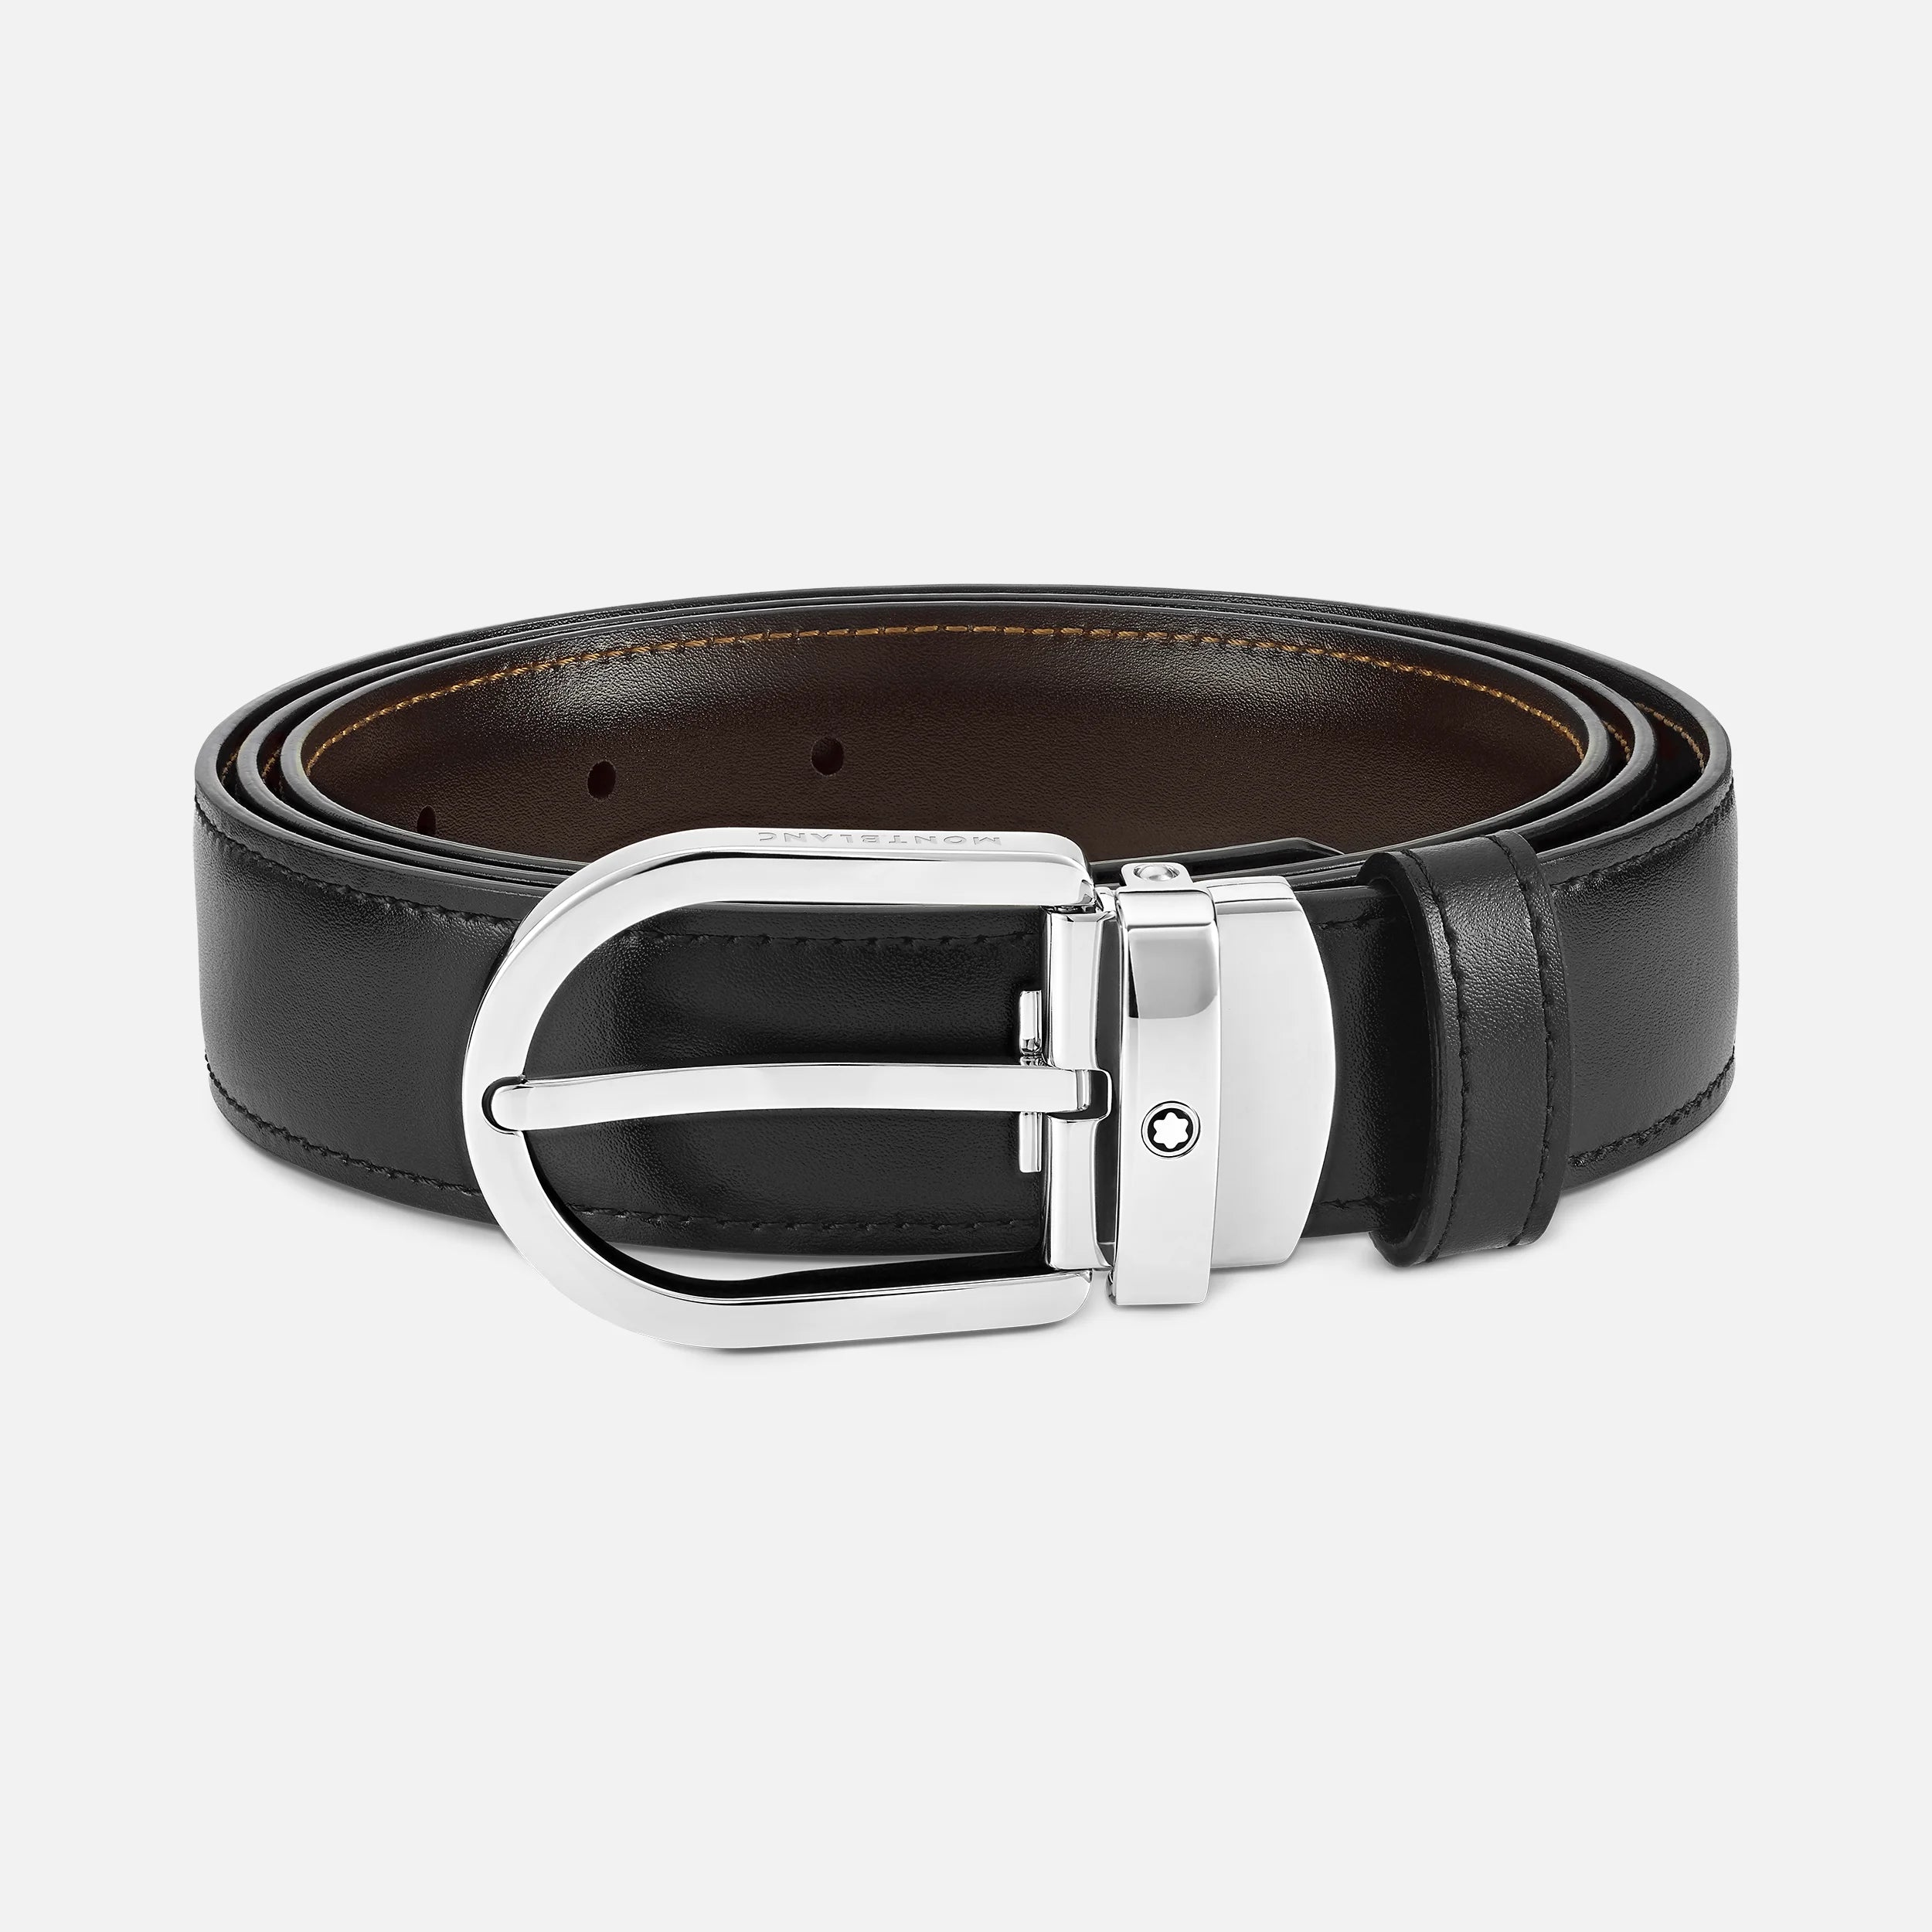 MONTBLANC | Cintura reversibile in pelle nera/marrone 30 mm con fibbia a ferro di cavallo | MB128135